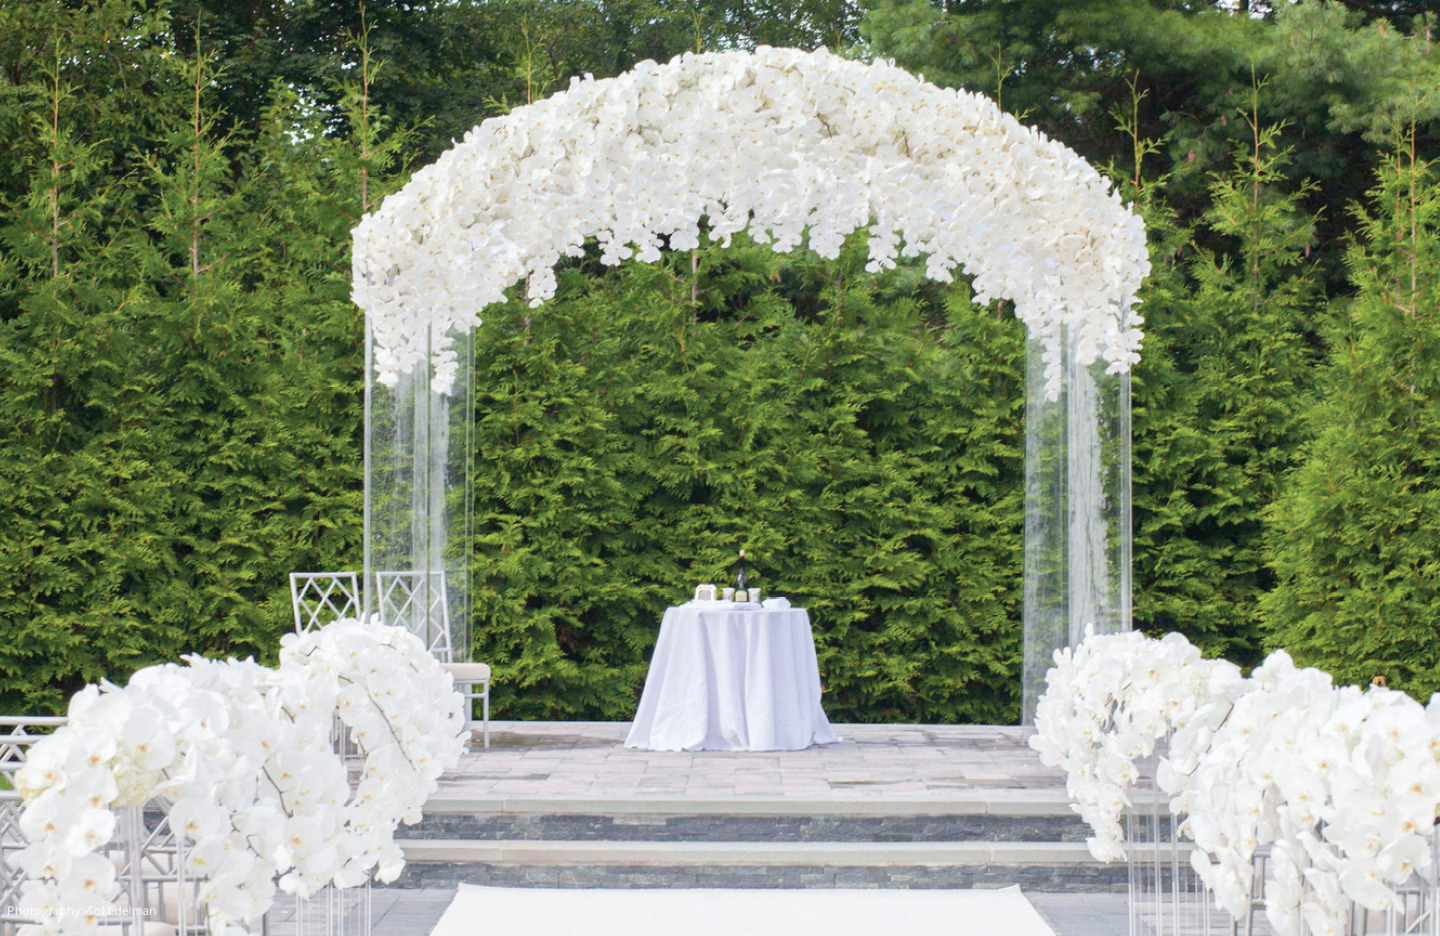 Ceremony decor inspiration - Wedding Style Magazine